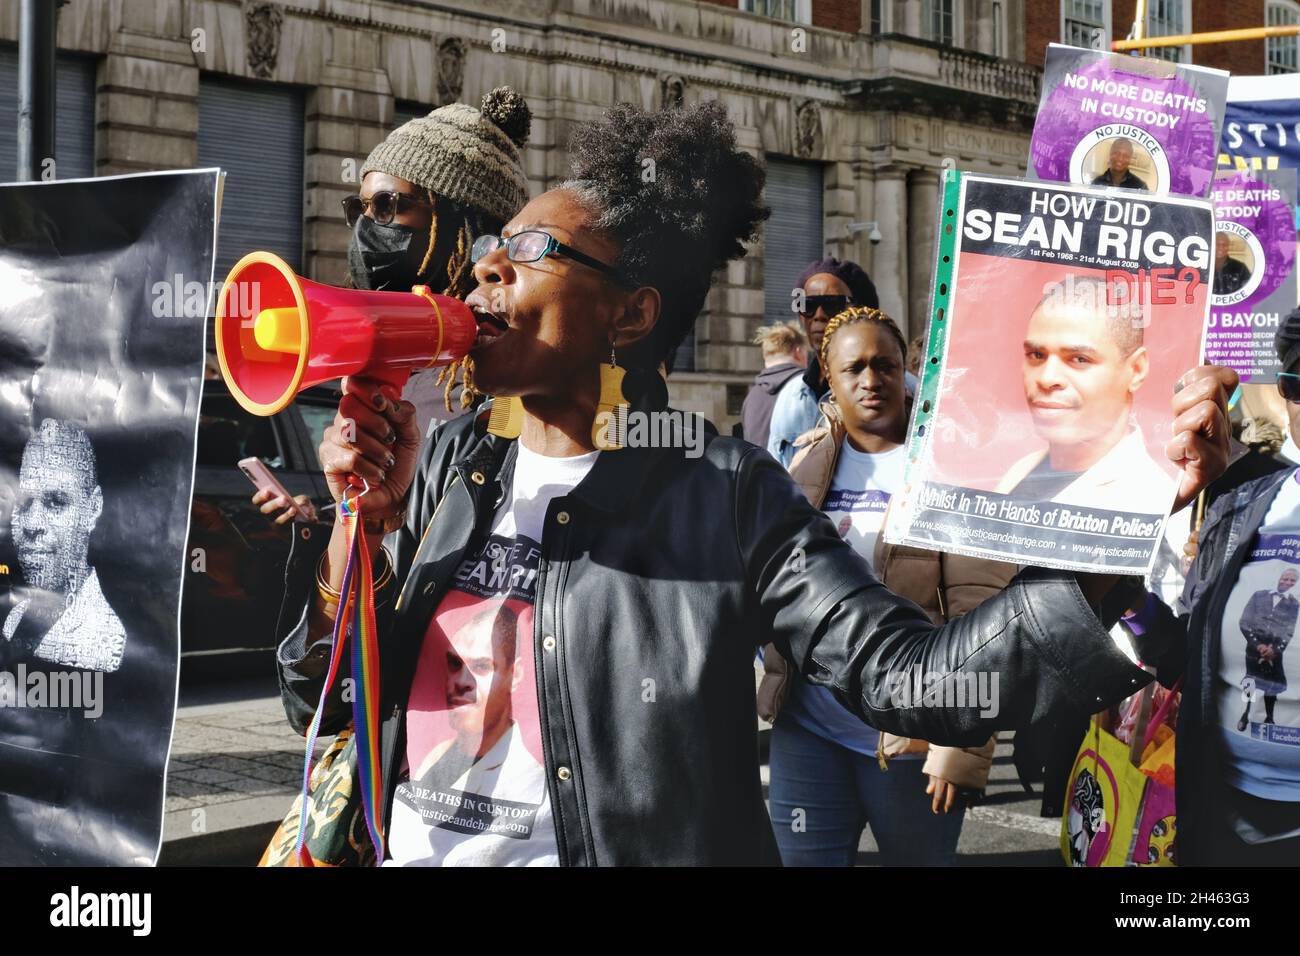 Londres, Royaume-Uni.Marcia Rigg, présidente de United Friends & Family Campaign, dirige la marche annuelle pour les personnes décédées en détention ou en prison. Banque D'Images